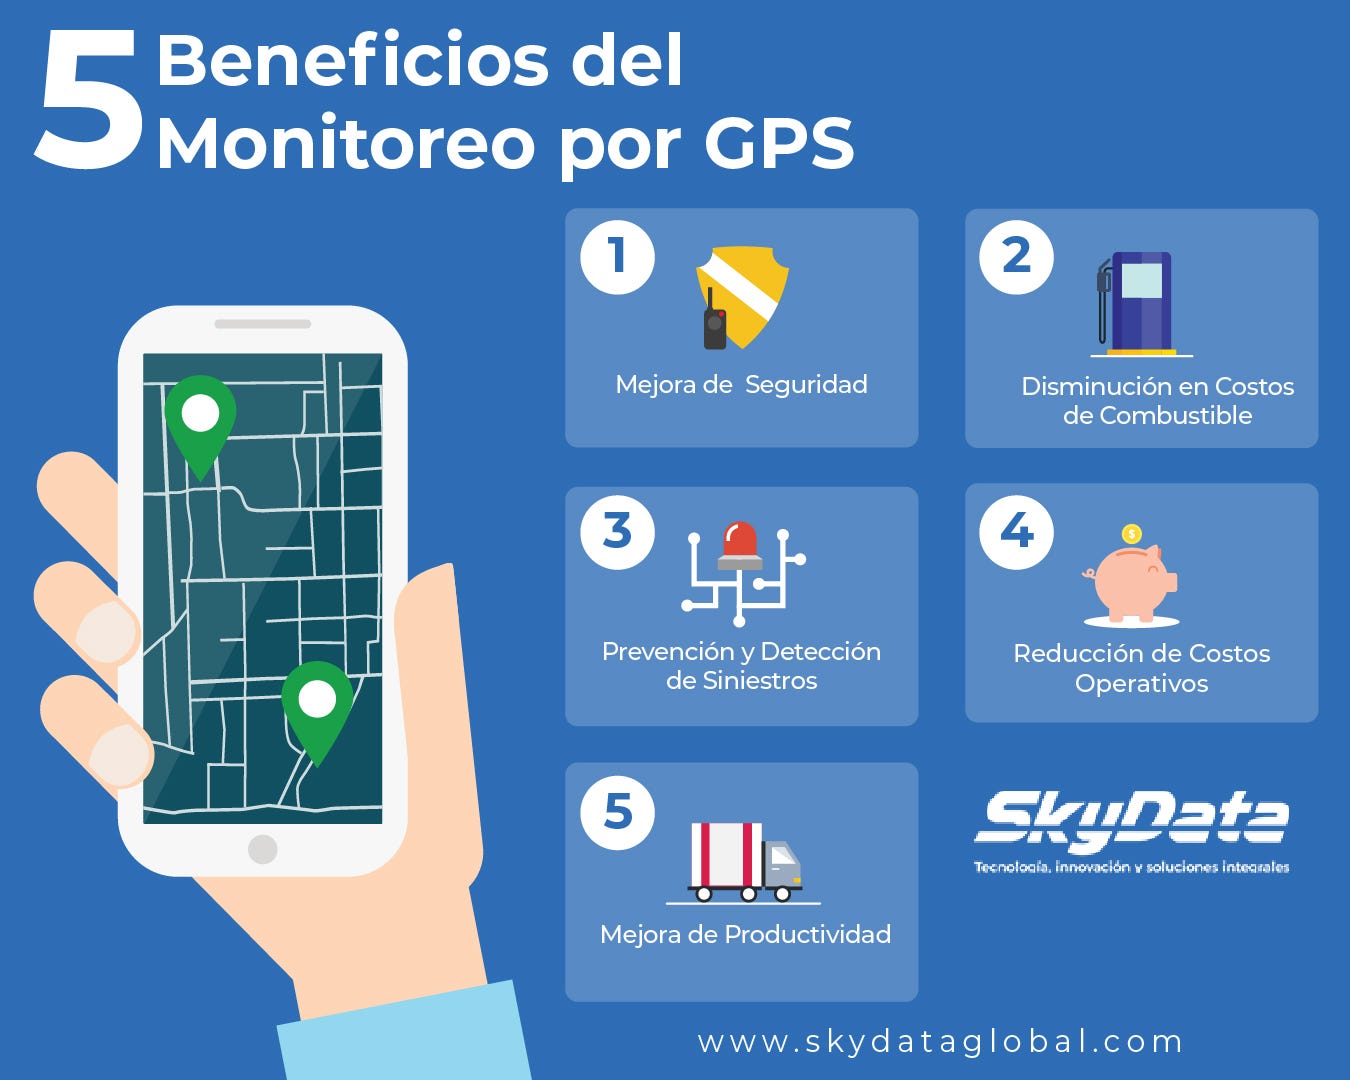 silencio Lesionarse El propietario 5 Beneficios del Monitoreo por GPS | by SkyData Global | Medium